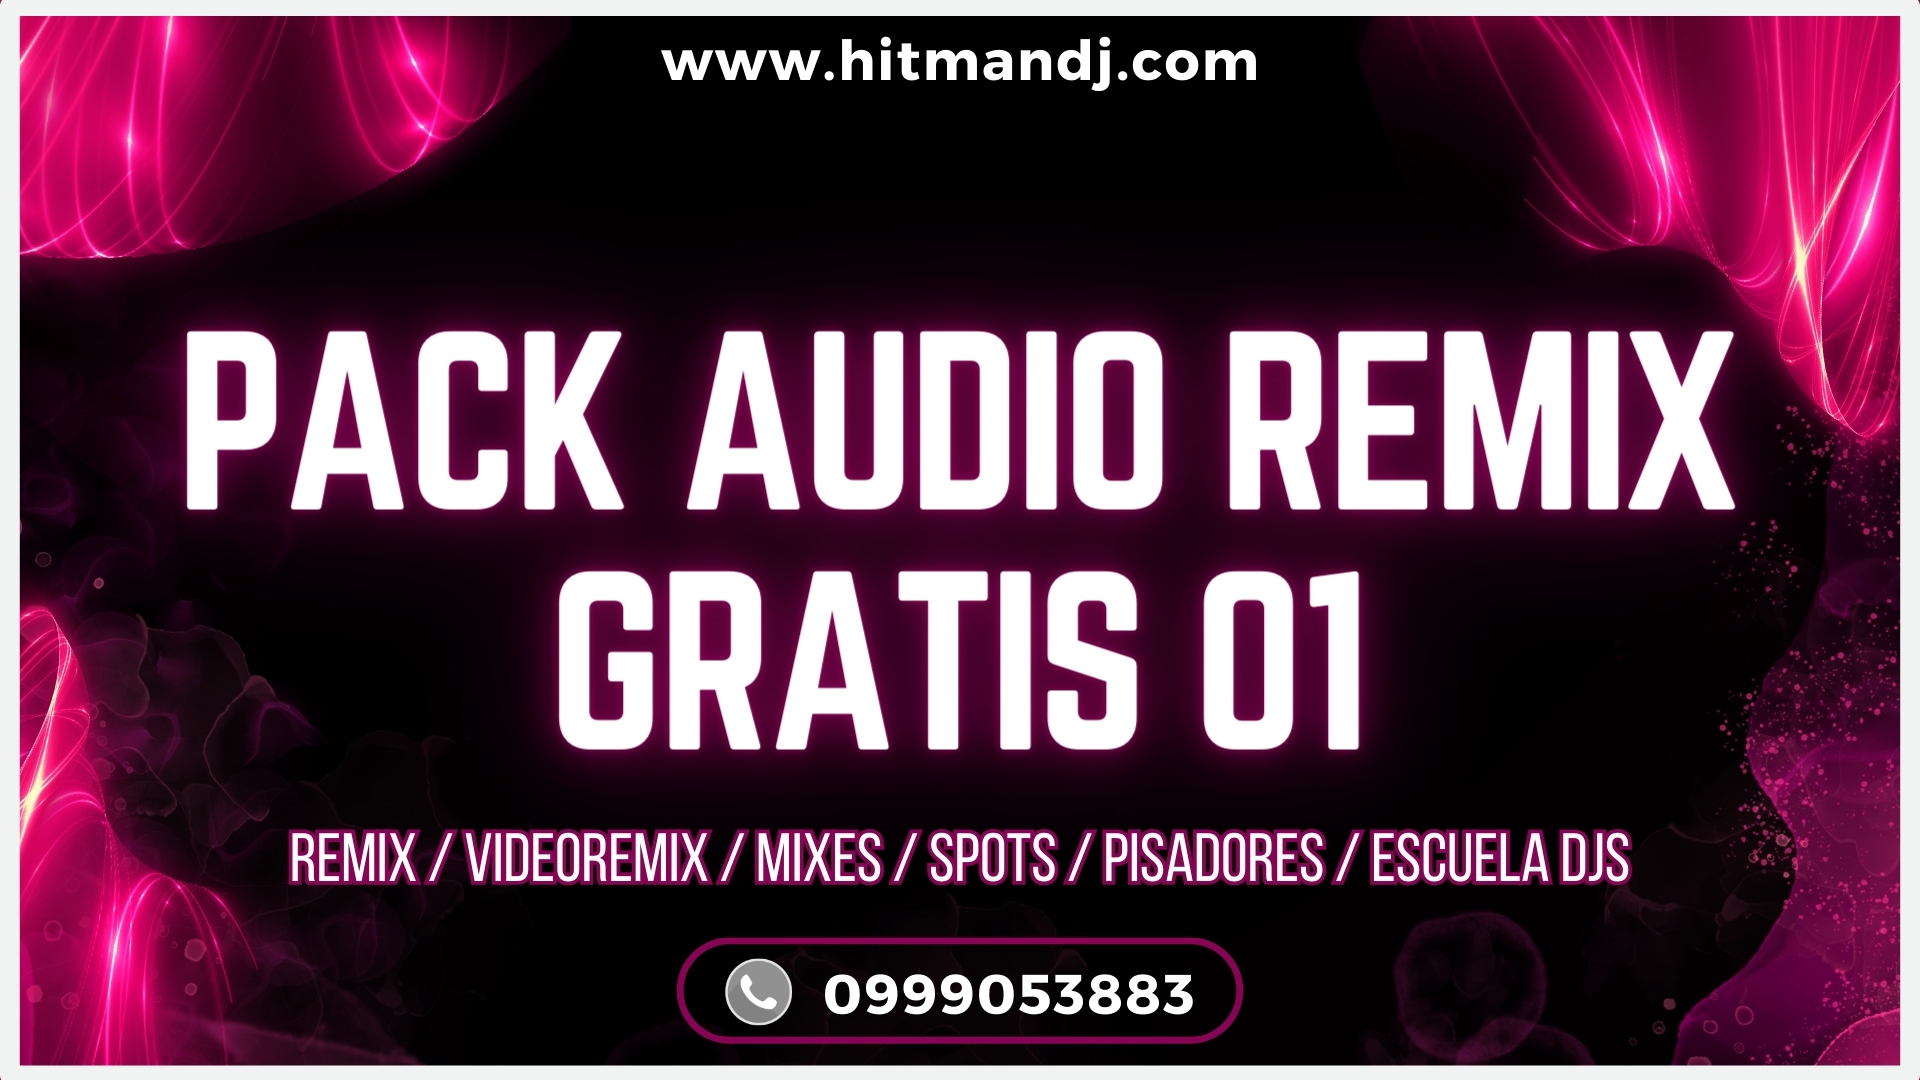 PACK AUDIO REMIX GRATIS 01